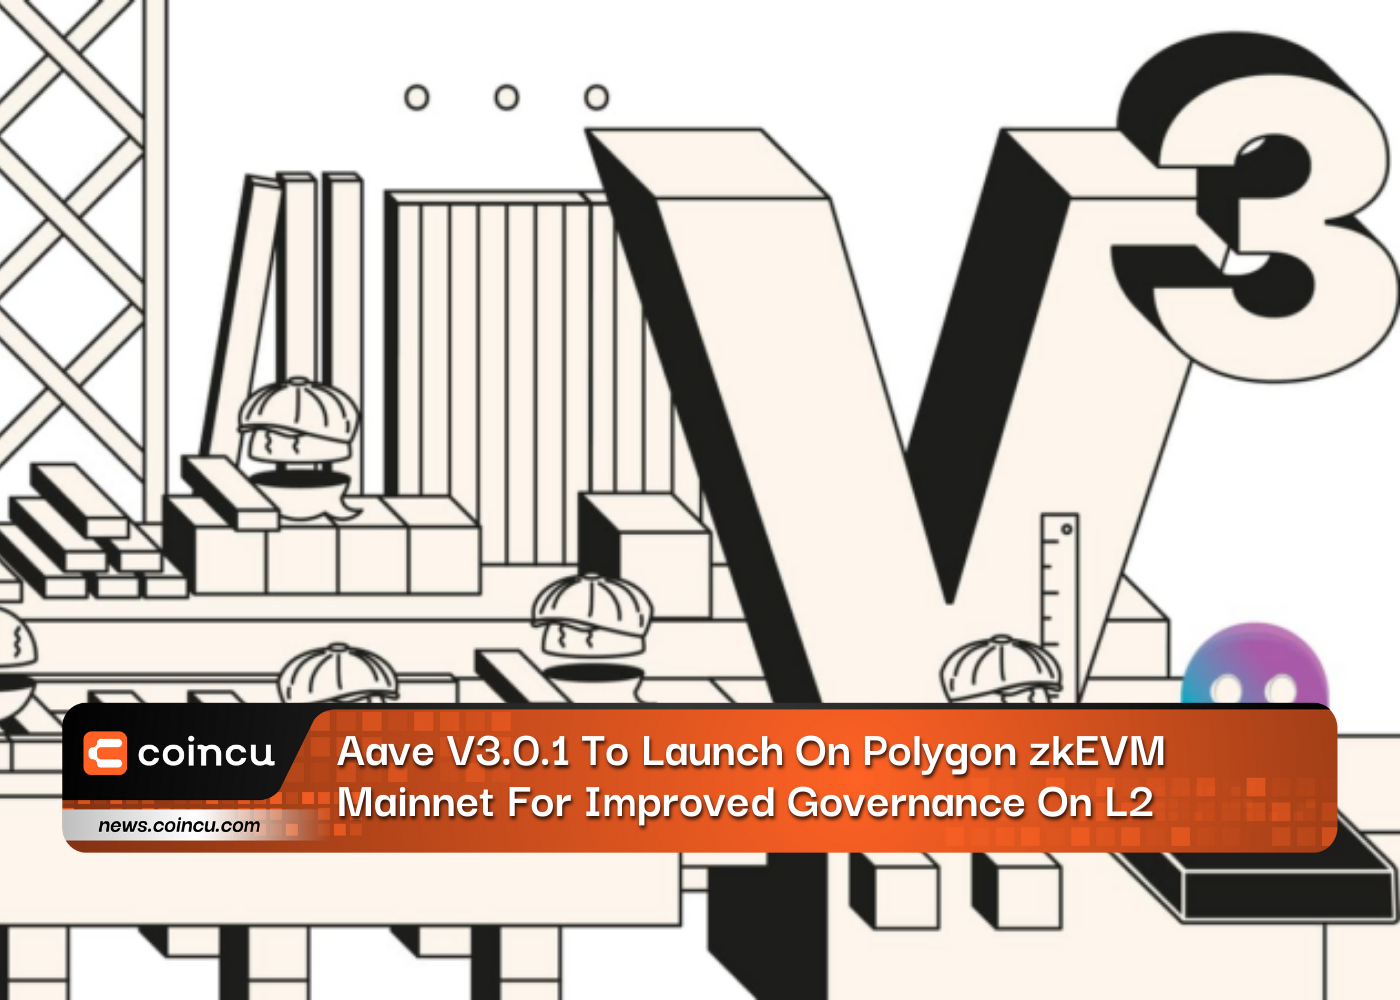 سيتم إطلاق Aave V3.0.1 على شبكة Polygon zkEVM الرئيسية لتحسين الإدارة على L2